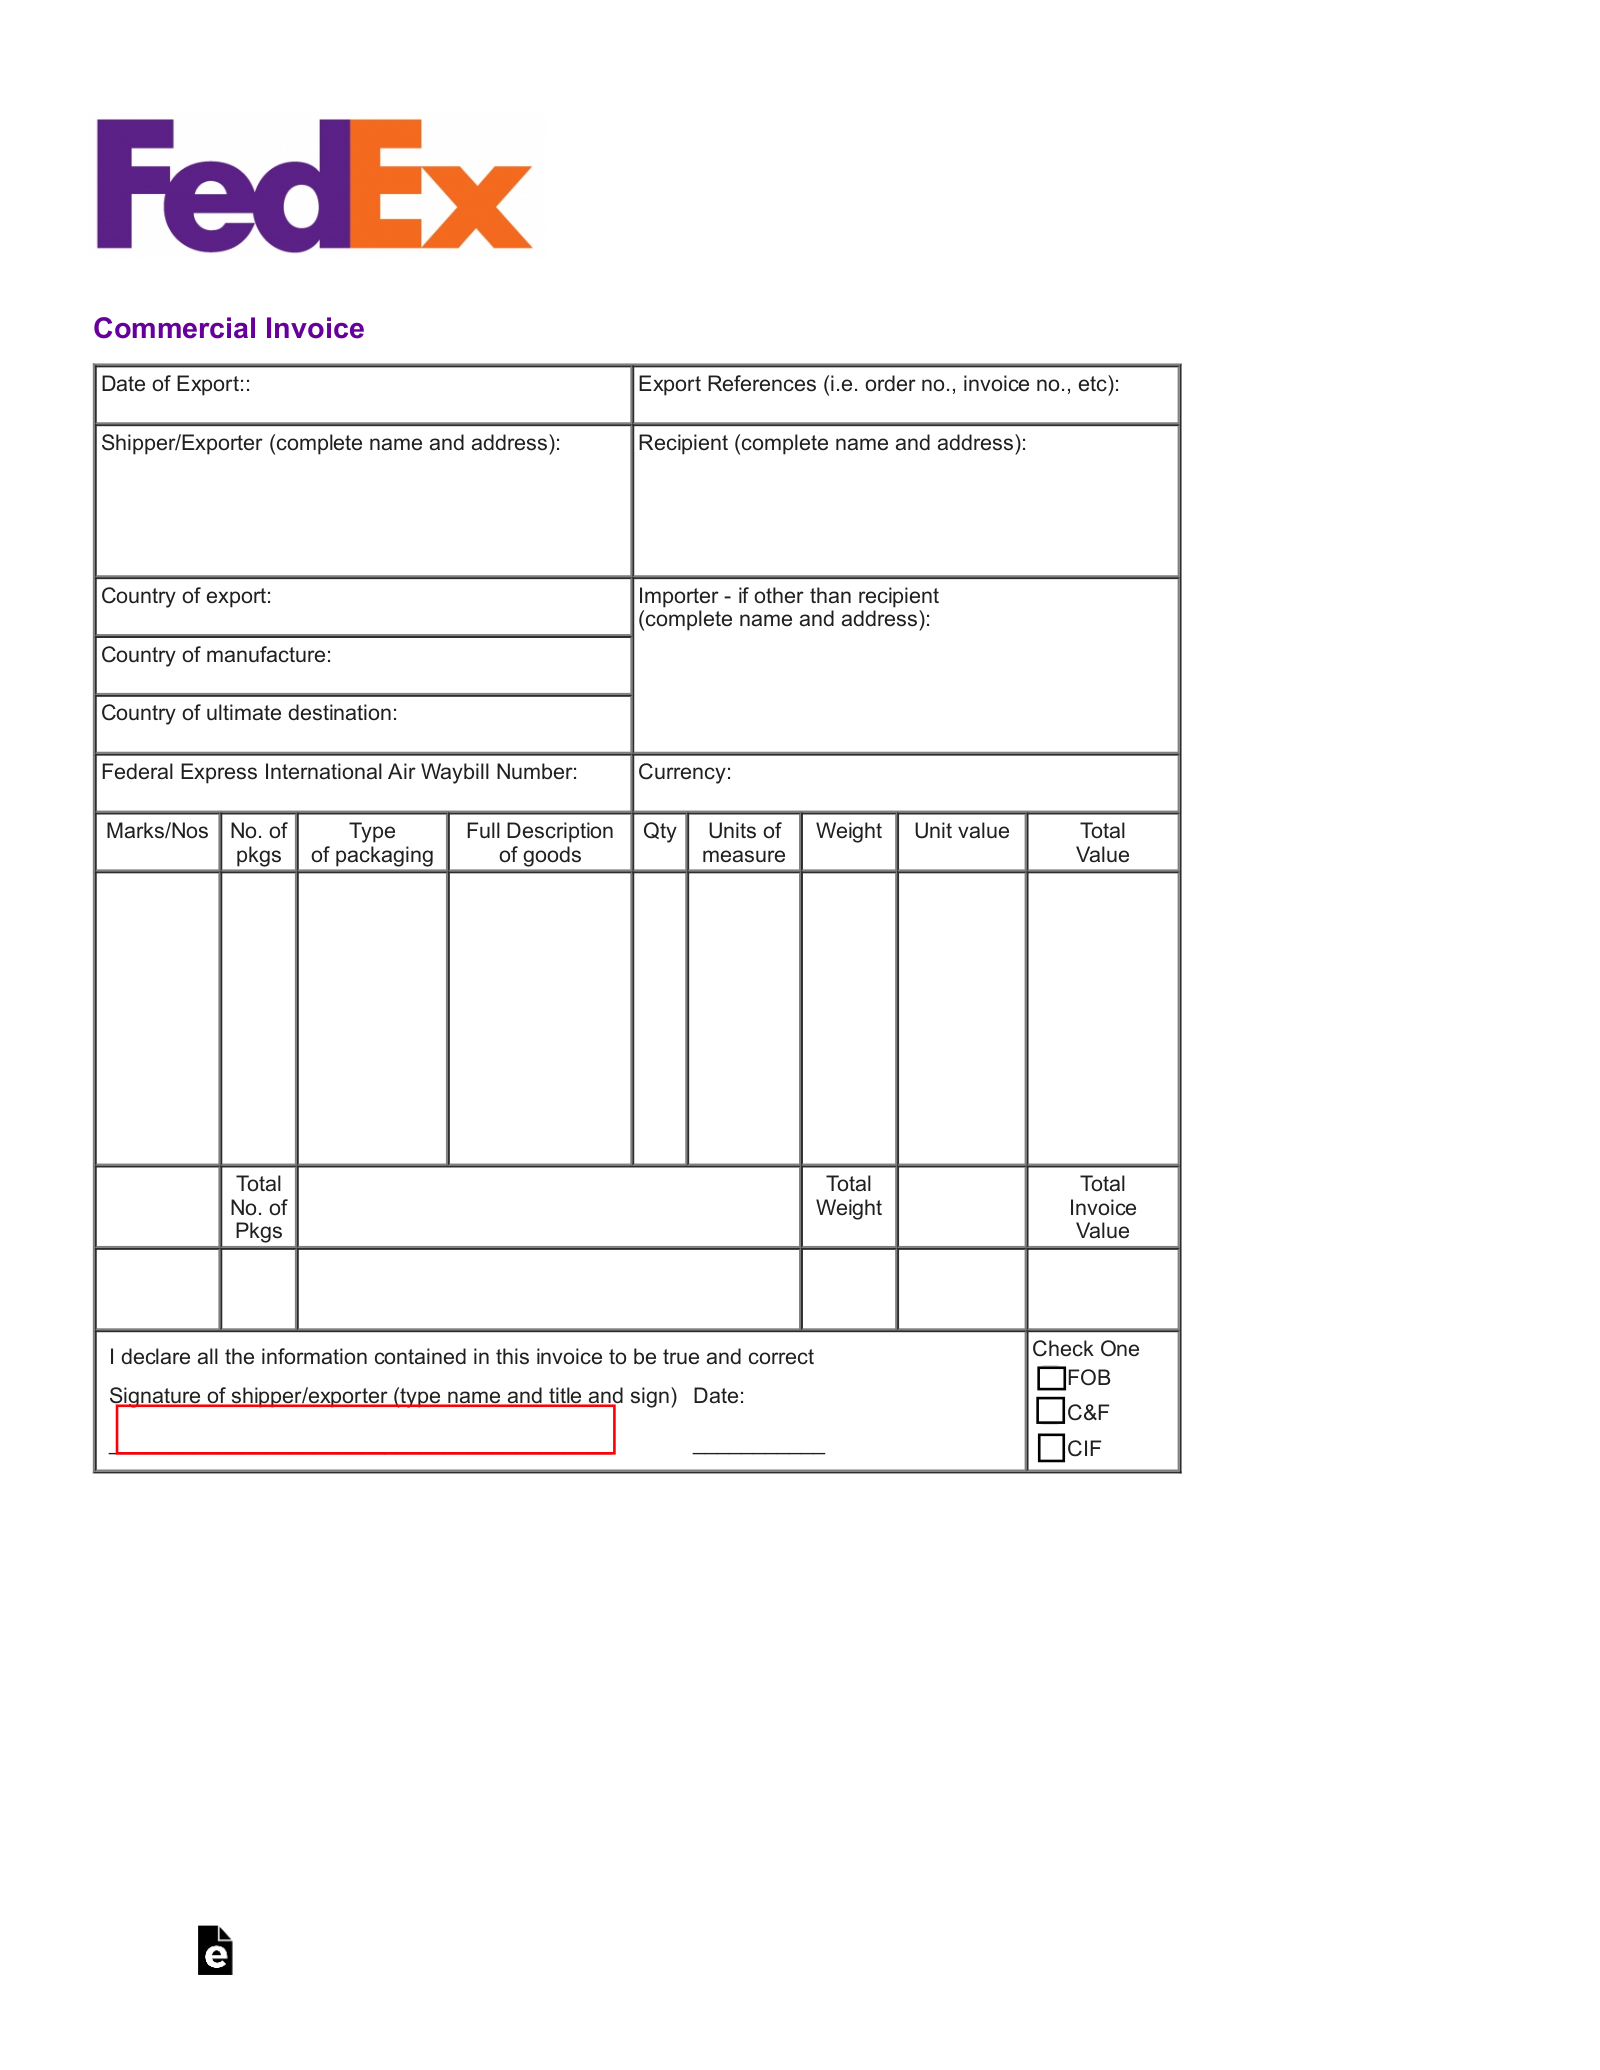 fedex airbill In Fedex Proforma Invoice Template